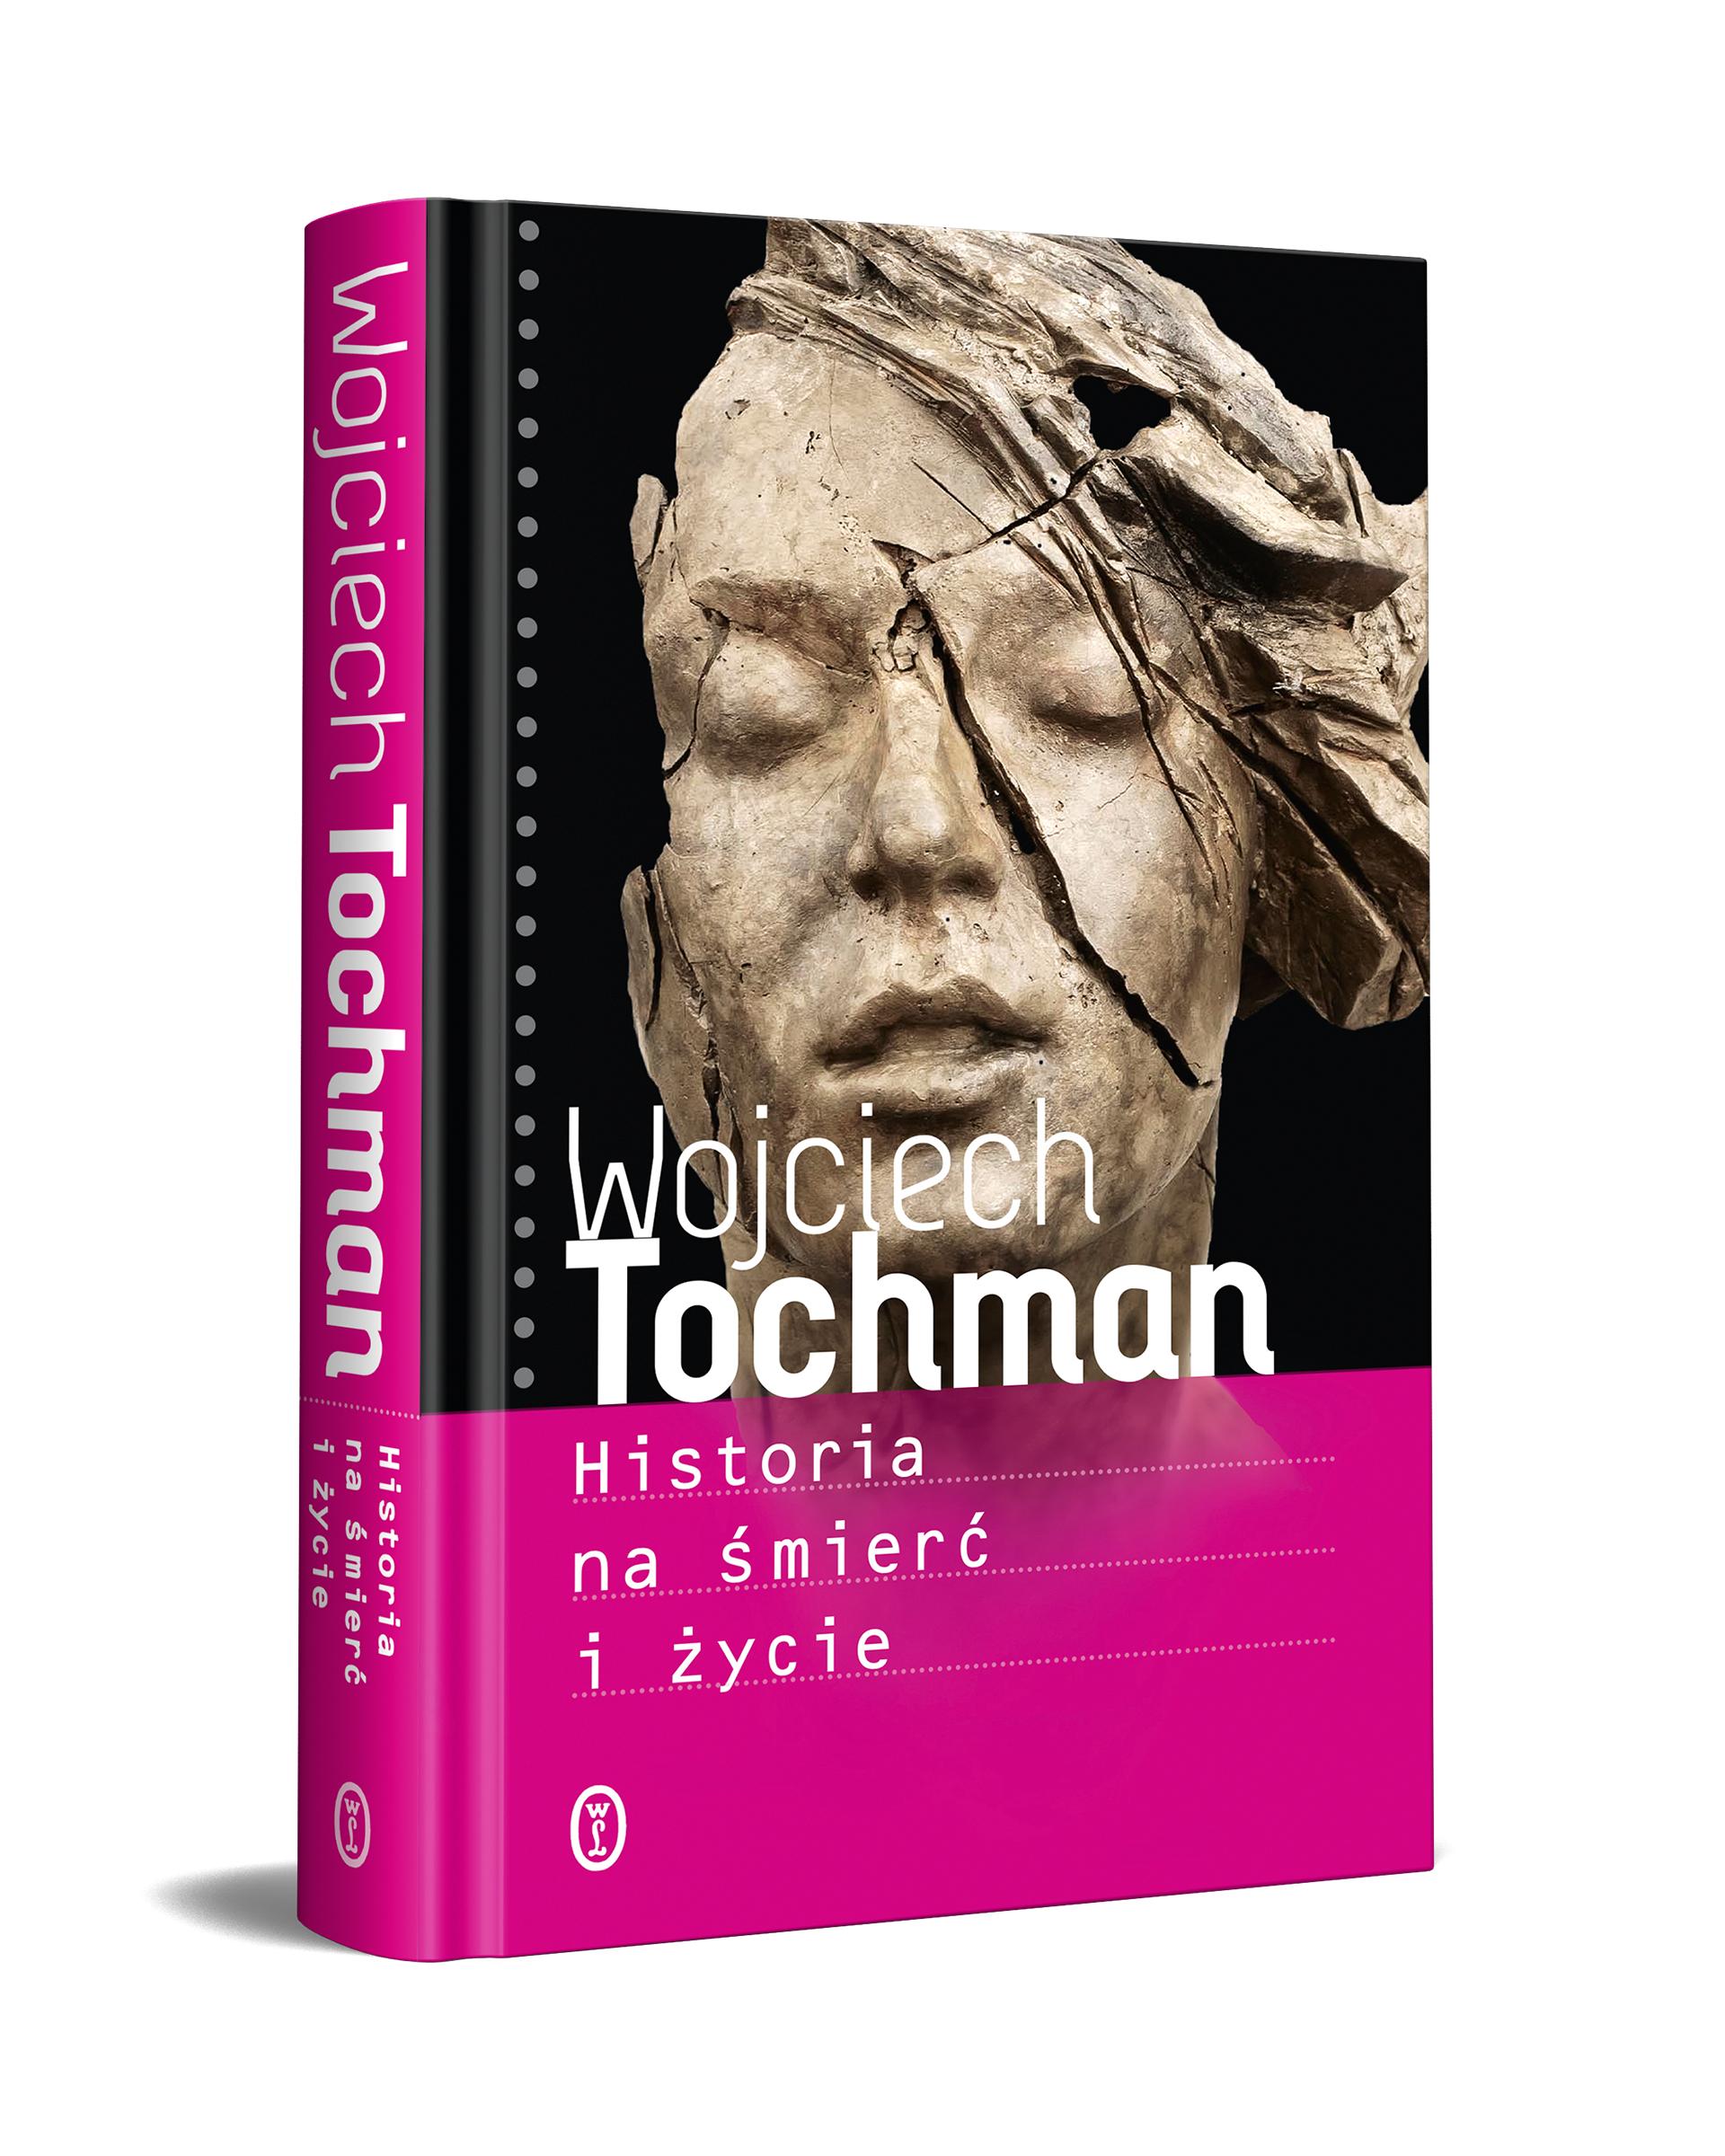 Okładka książki Wojciecha Tochmana "Historia na śmierć i życie"